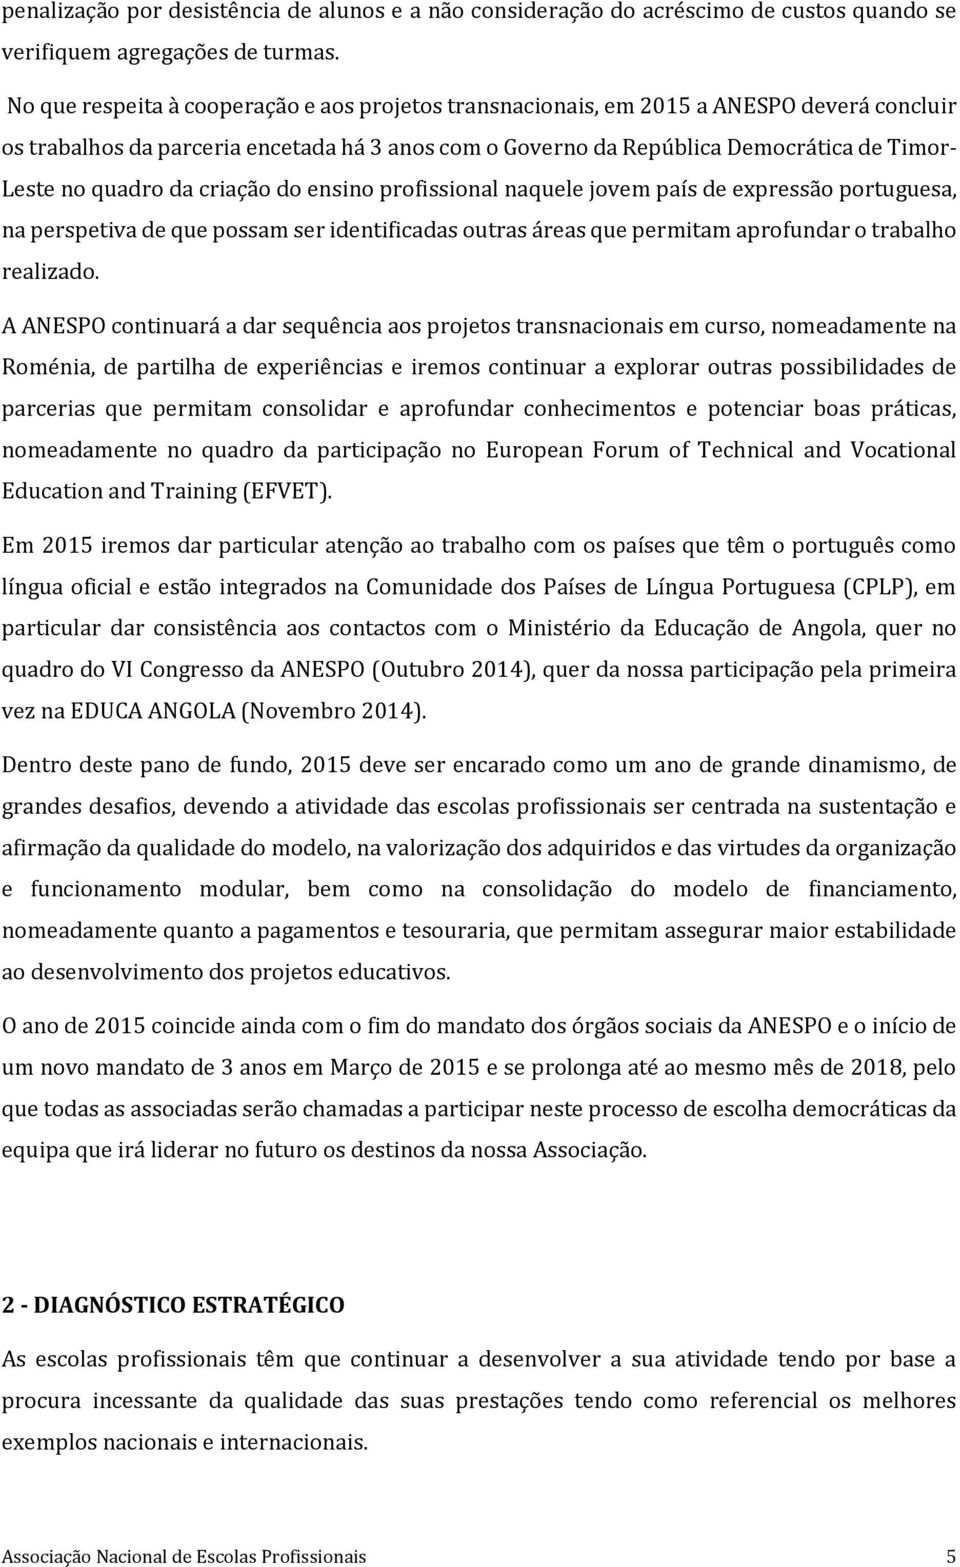 quadro da criação do ensino profissional naquele jovem país de expressão portuguesa, na perspetiva de que possam ser identificadas outras áreas que permitam aprofundar o trabalho realizado.